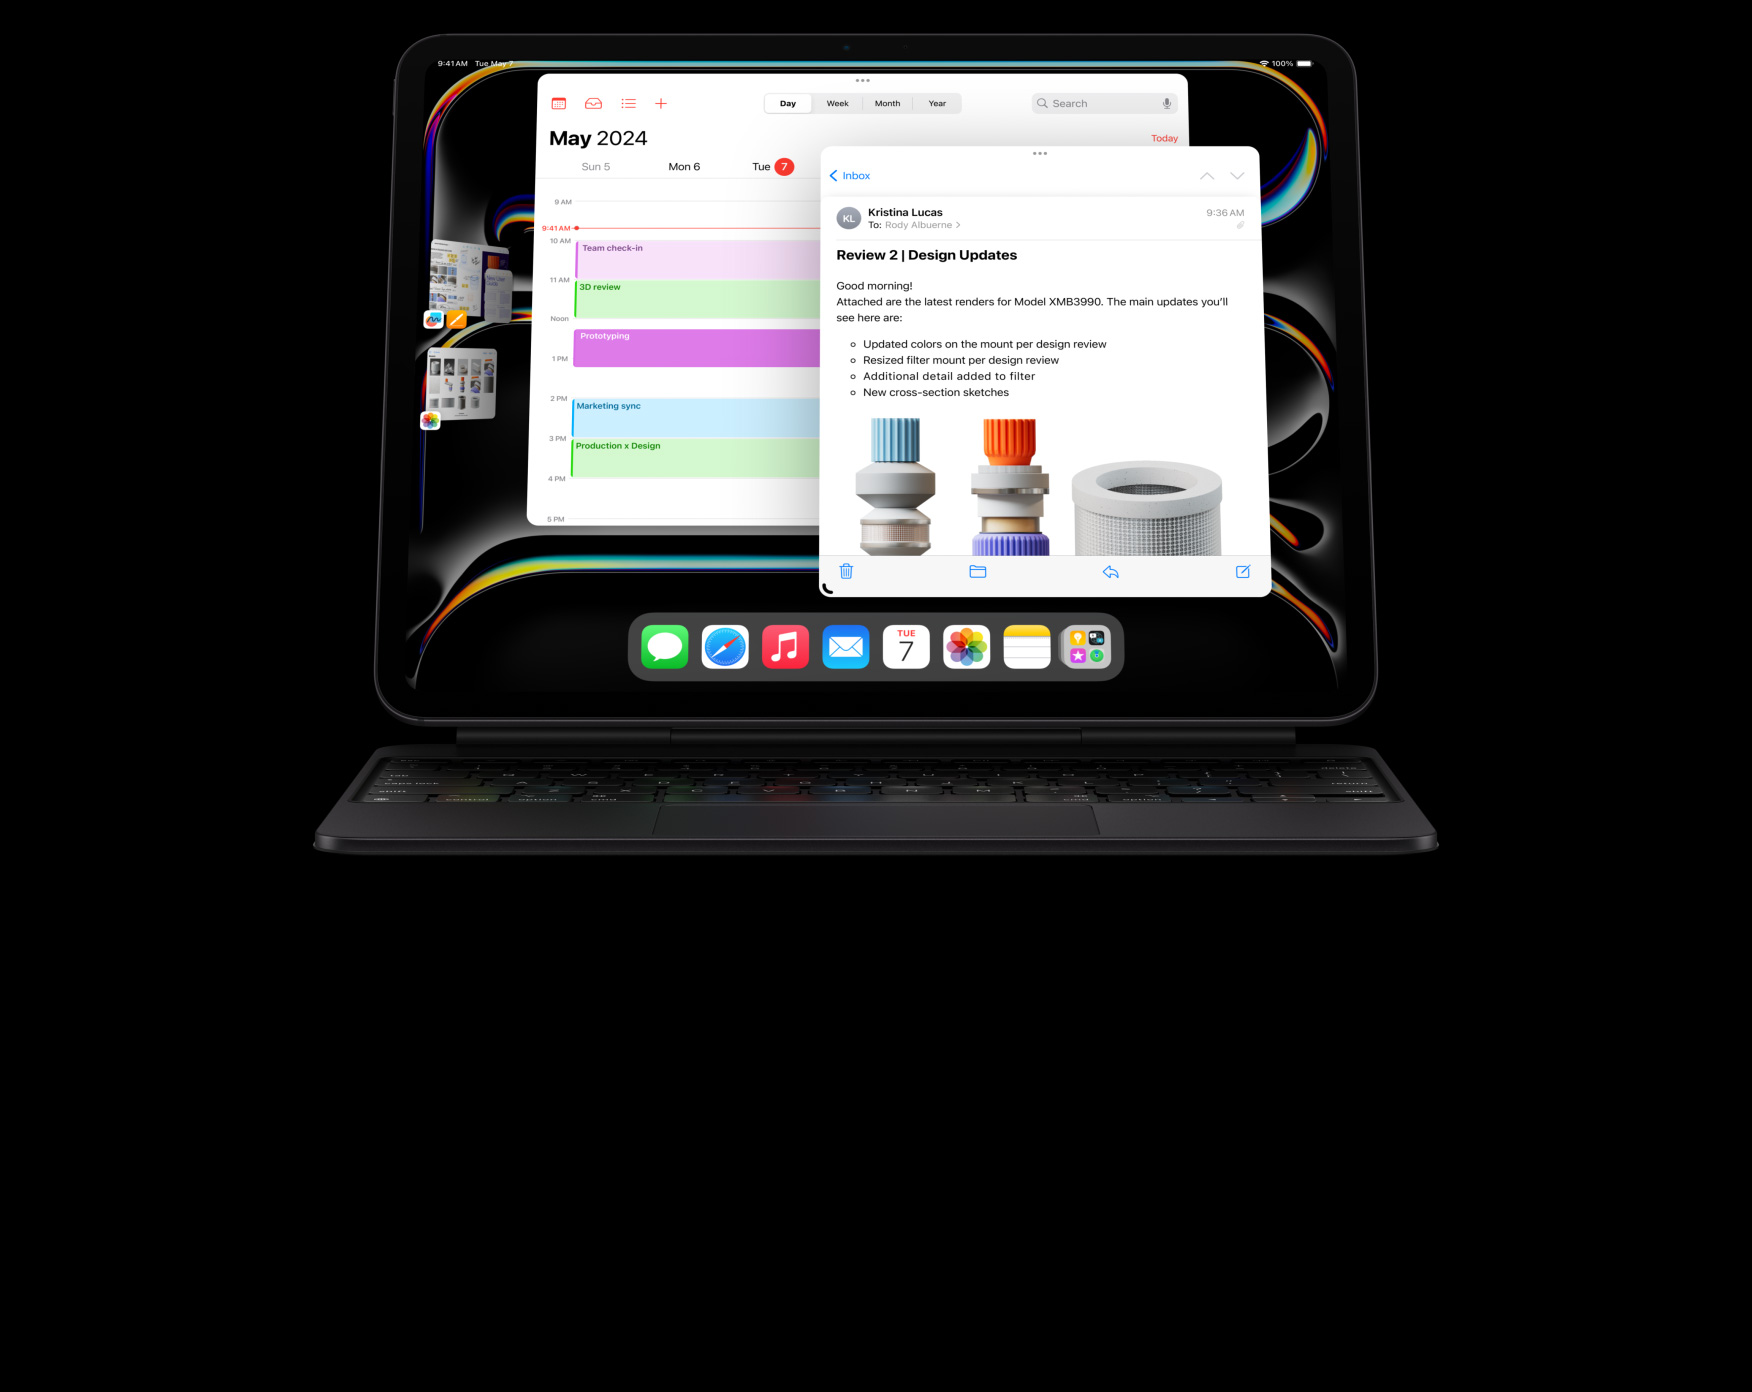 iPad Pro festet til Magic Keyboard i liggende format, personen multitasker med flere apper åpne